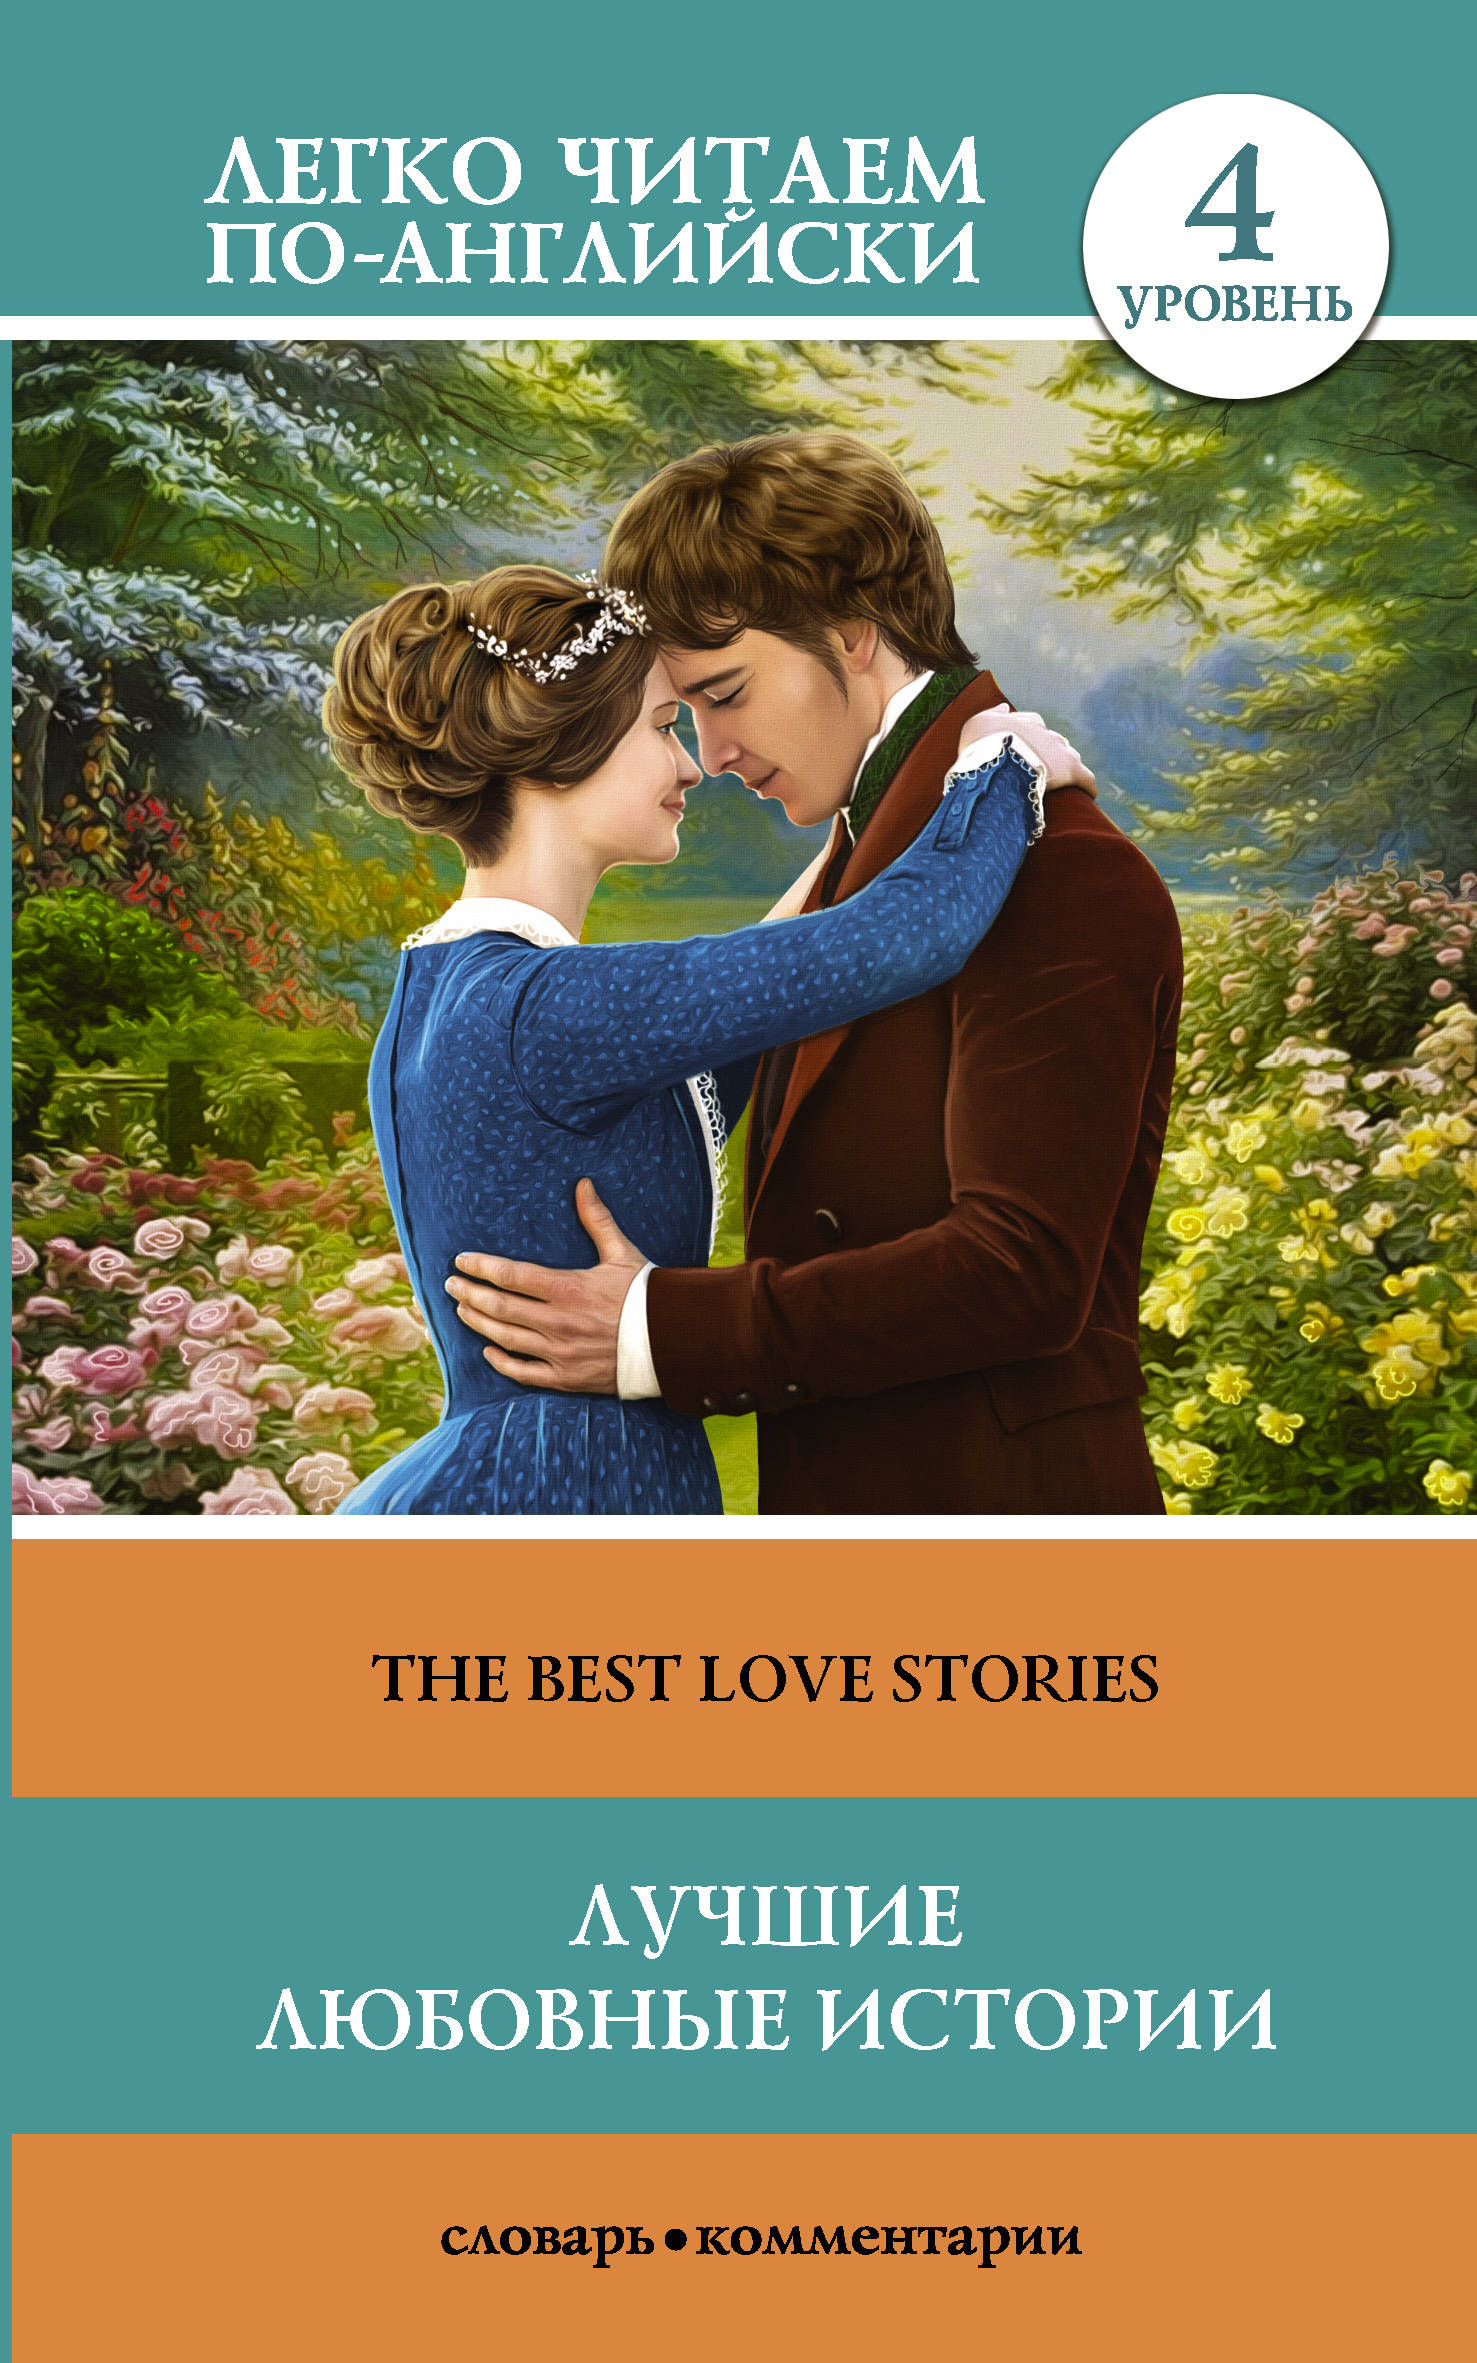  Лучшие любовные истории. Уровень 4 - страница 0